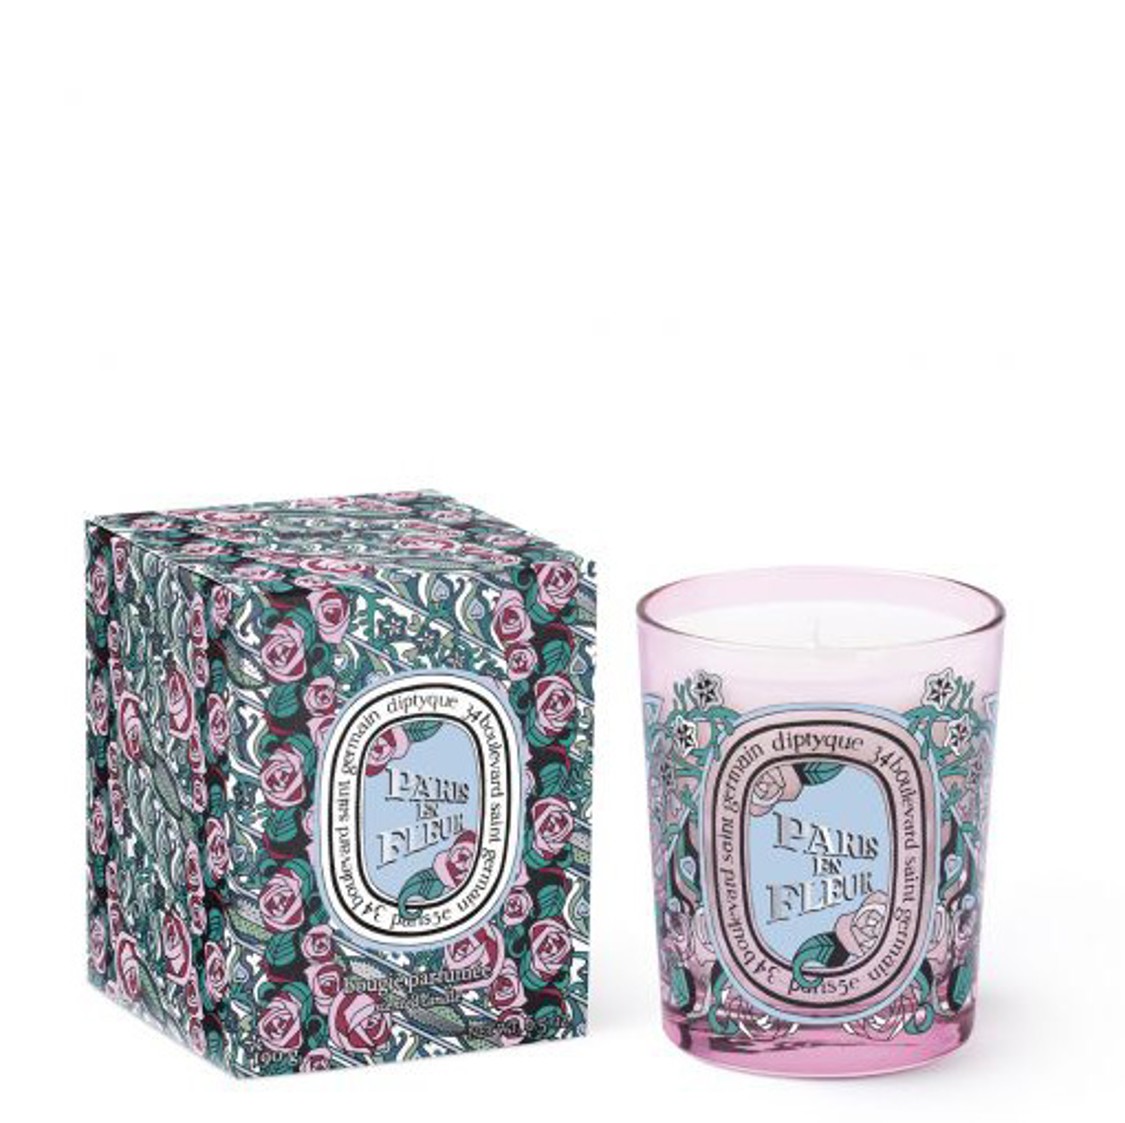 shop Diptyque  Candele: Candele Diptyque, Paris en fleur, nuova candela 2020, in edizione limitata, a base di rosa chypré petali e patchouli. number 1657